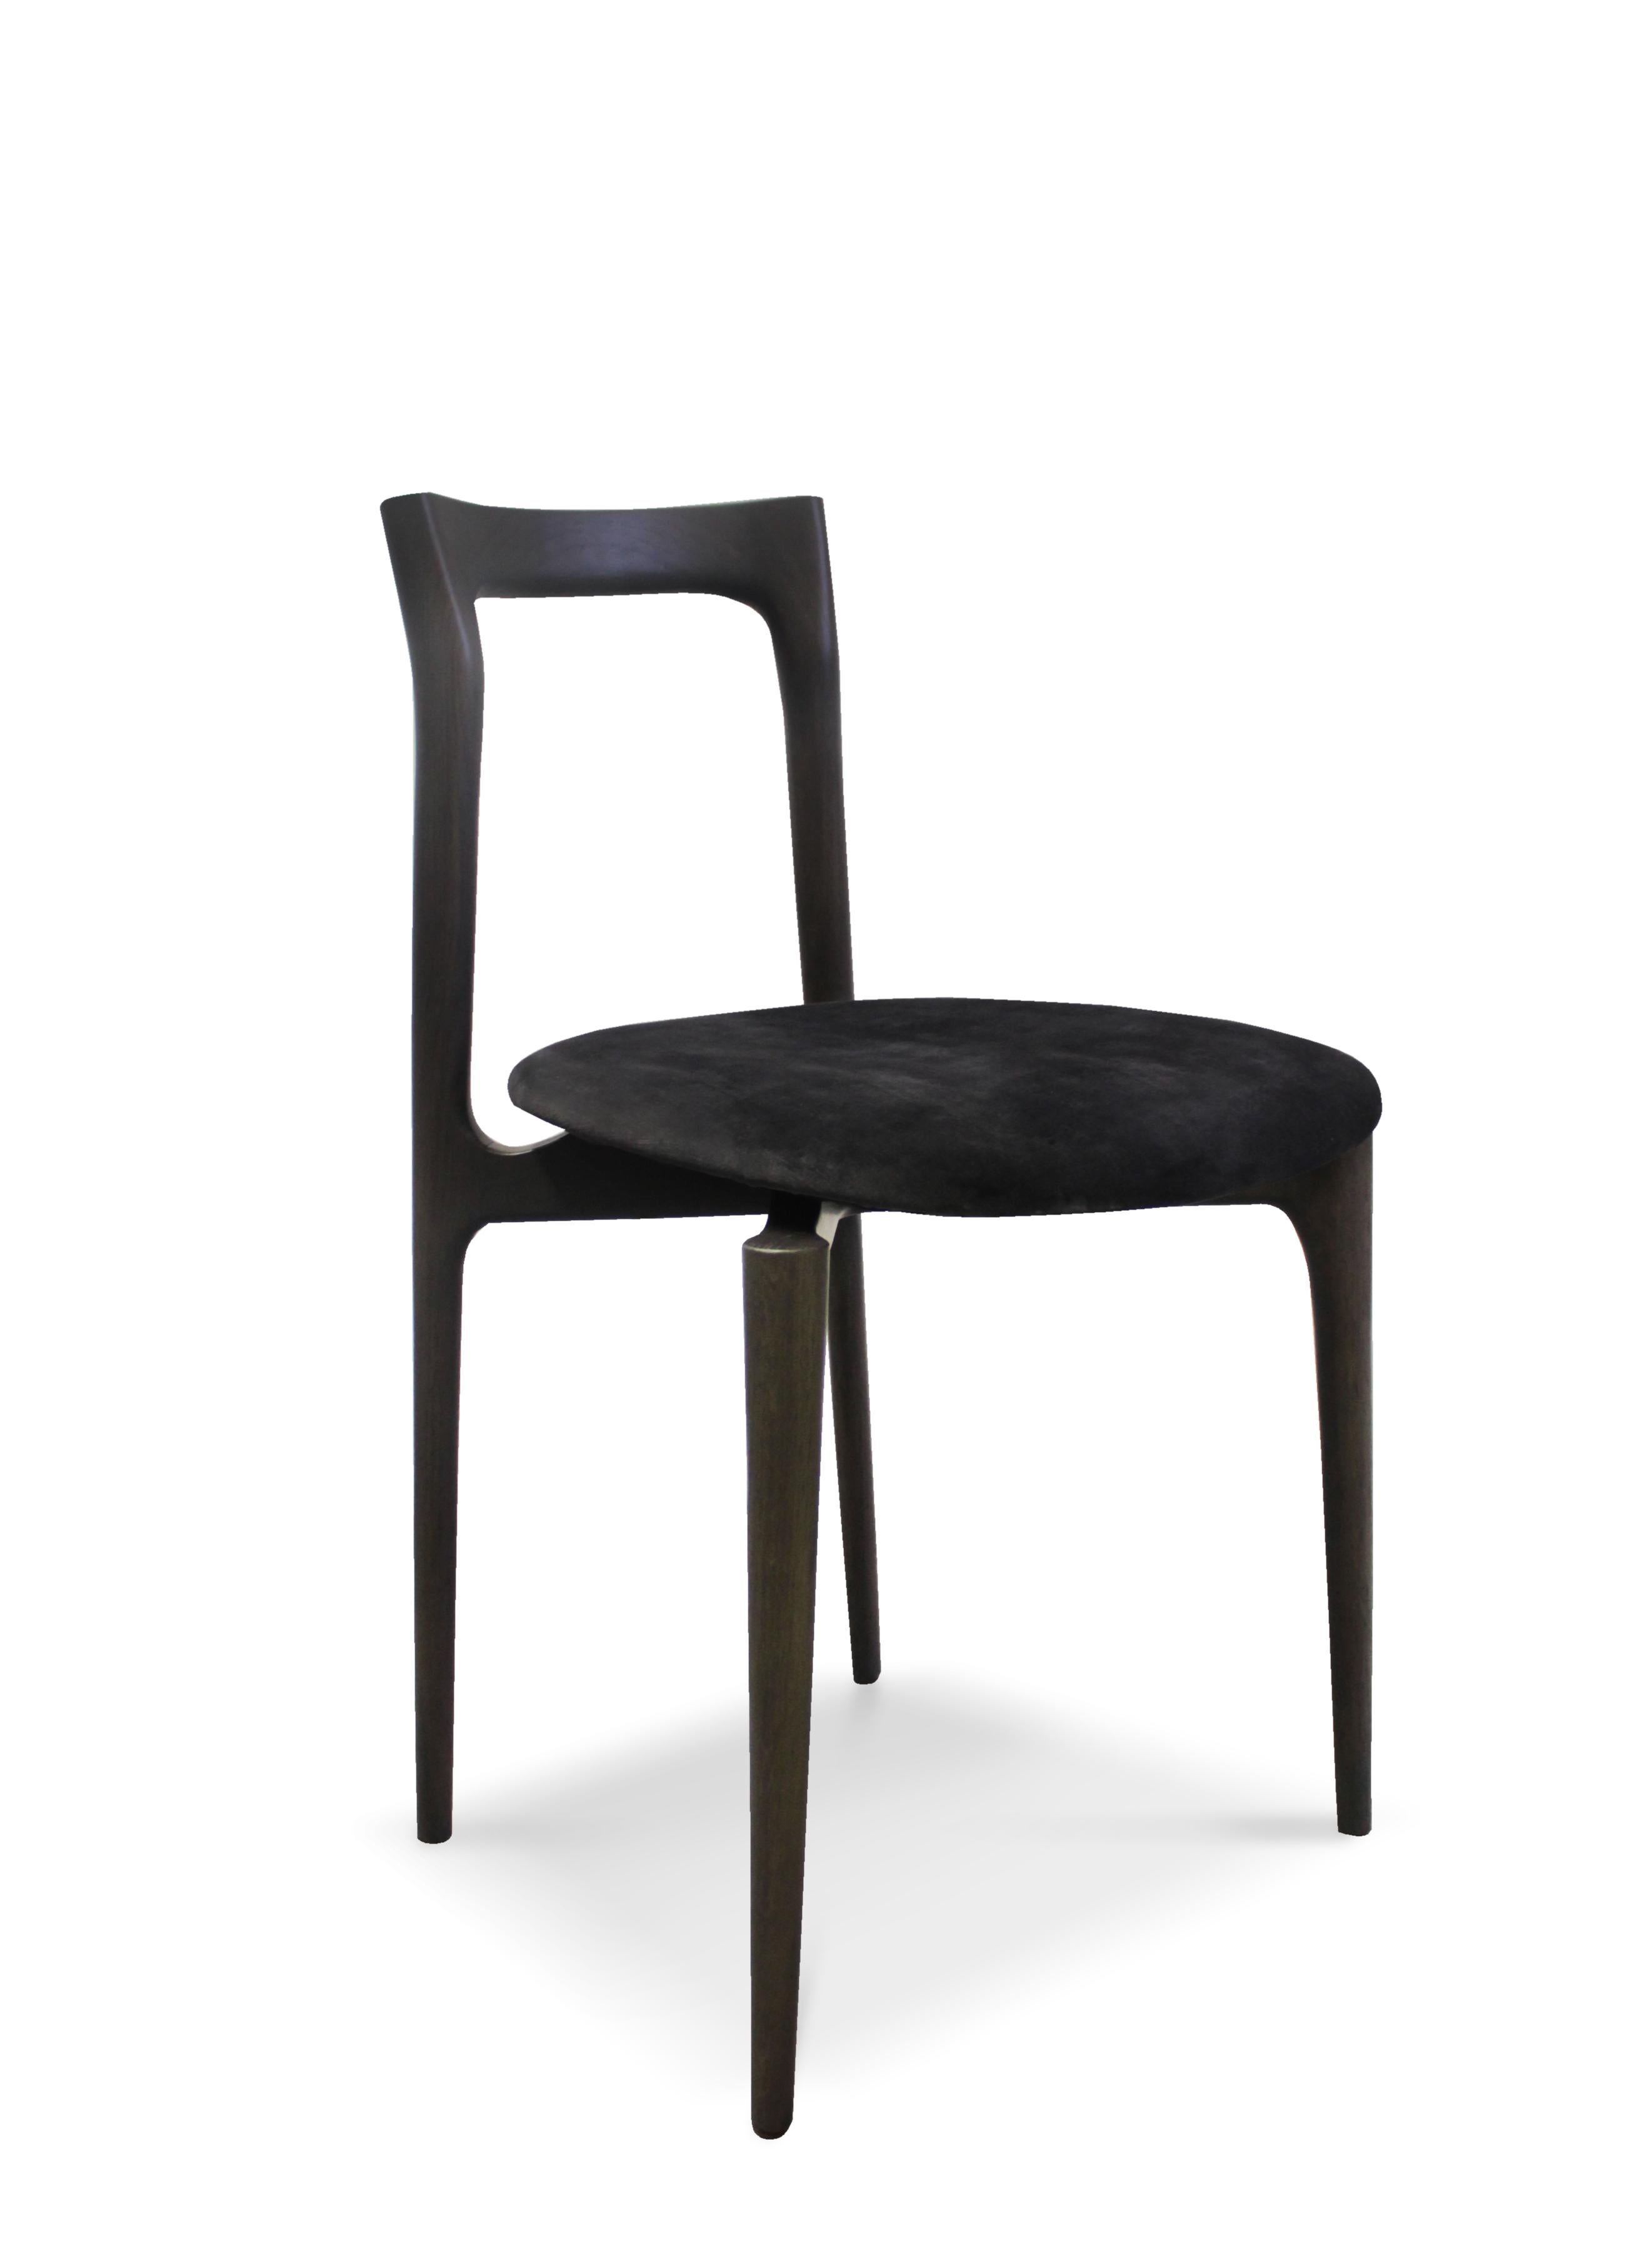 Chaise de salle à manger grise de Collector
MATERIAUX : tapissé en cuir véritable Linea 645, structure en bois de chêne massif.
Dimensions : L 45 x P 50 x H 77 cm SH 48 cm
Le prix peut varier en fonction du matériau.

Avec une structure légère en